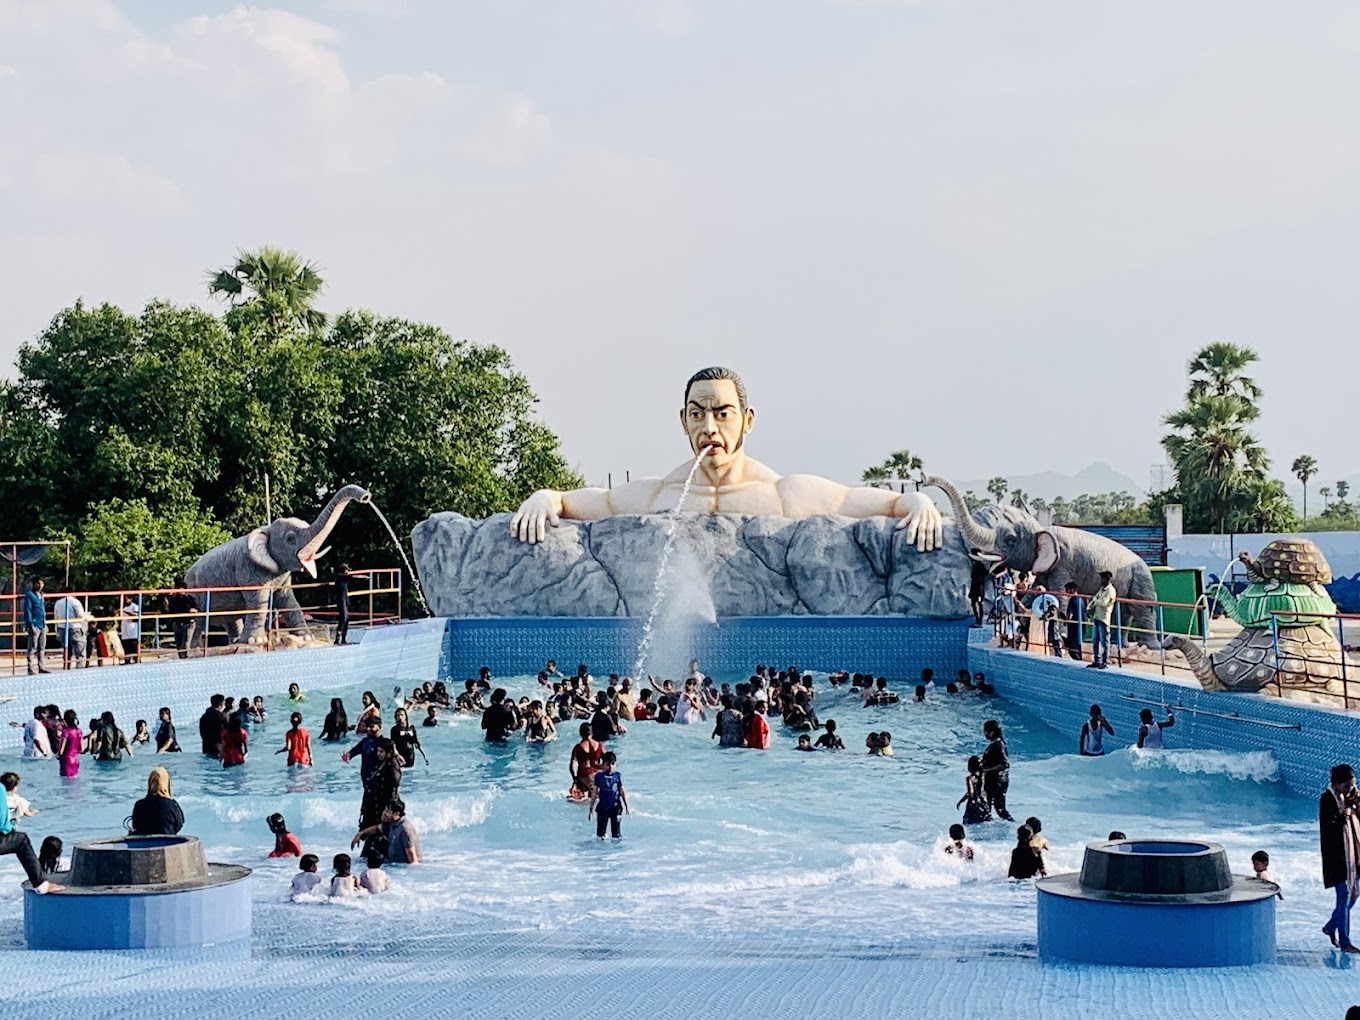 Mount Opera Water Park|Amusement Park|Entertainment